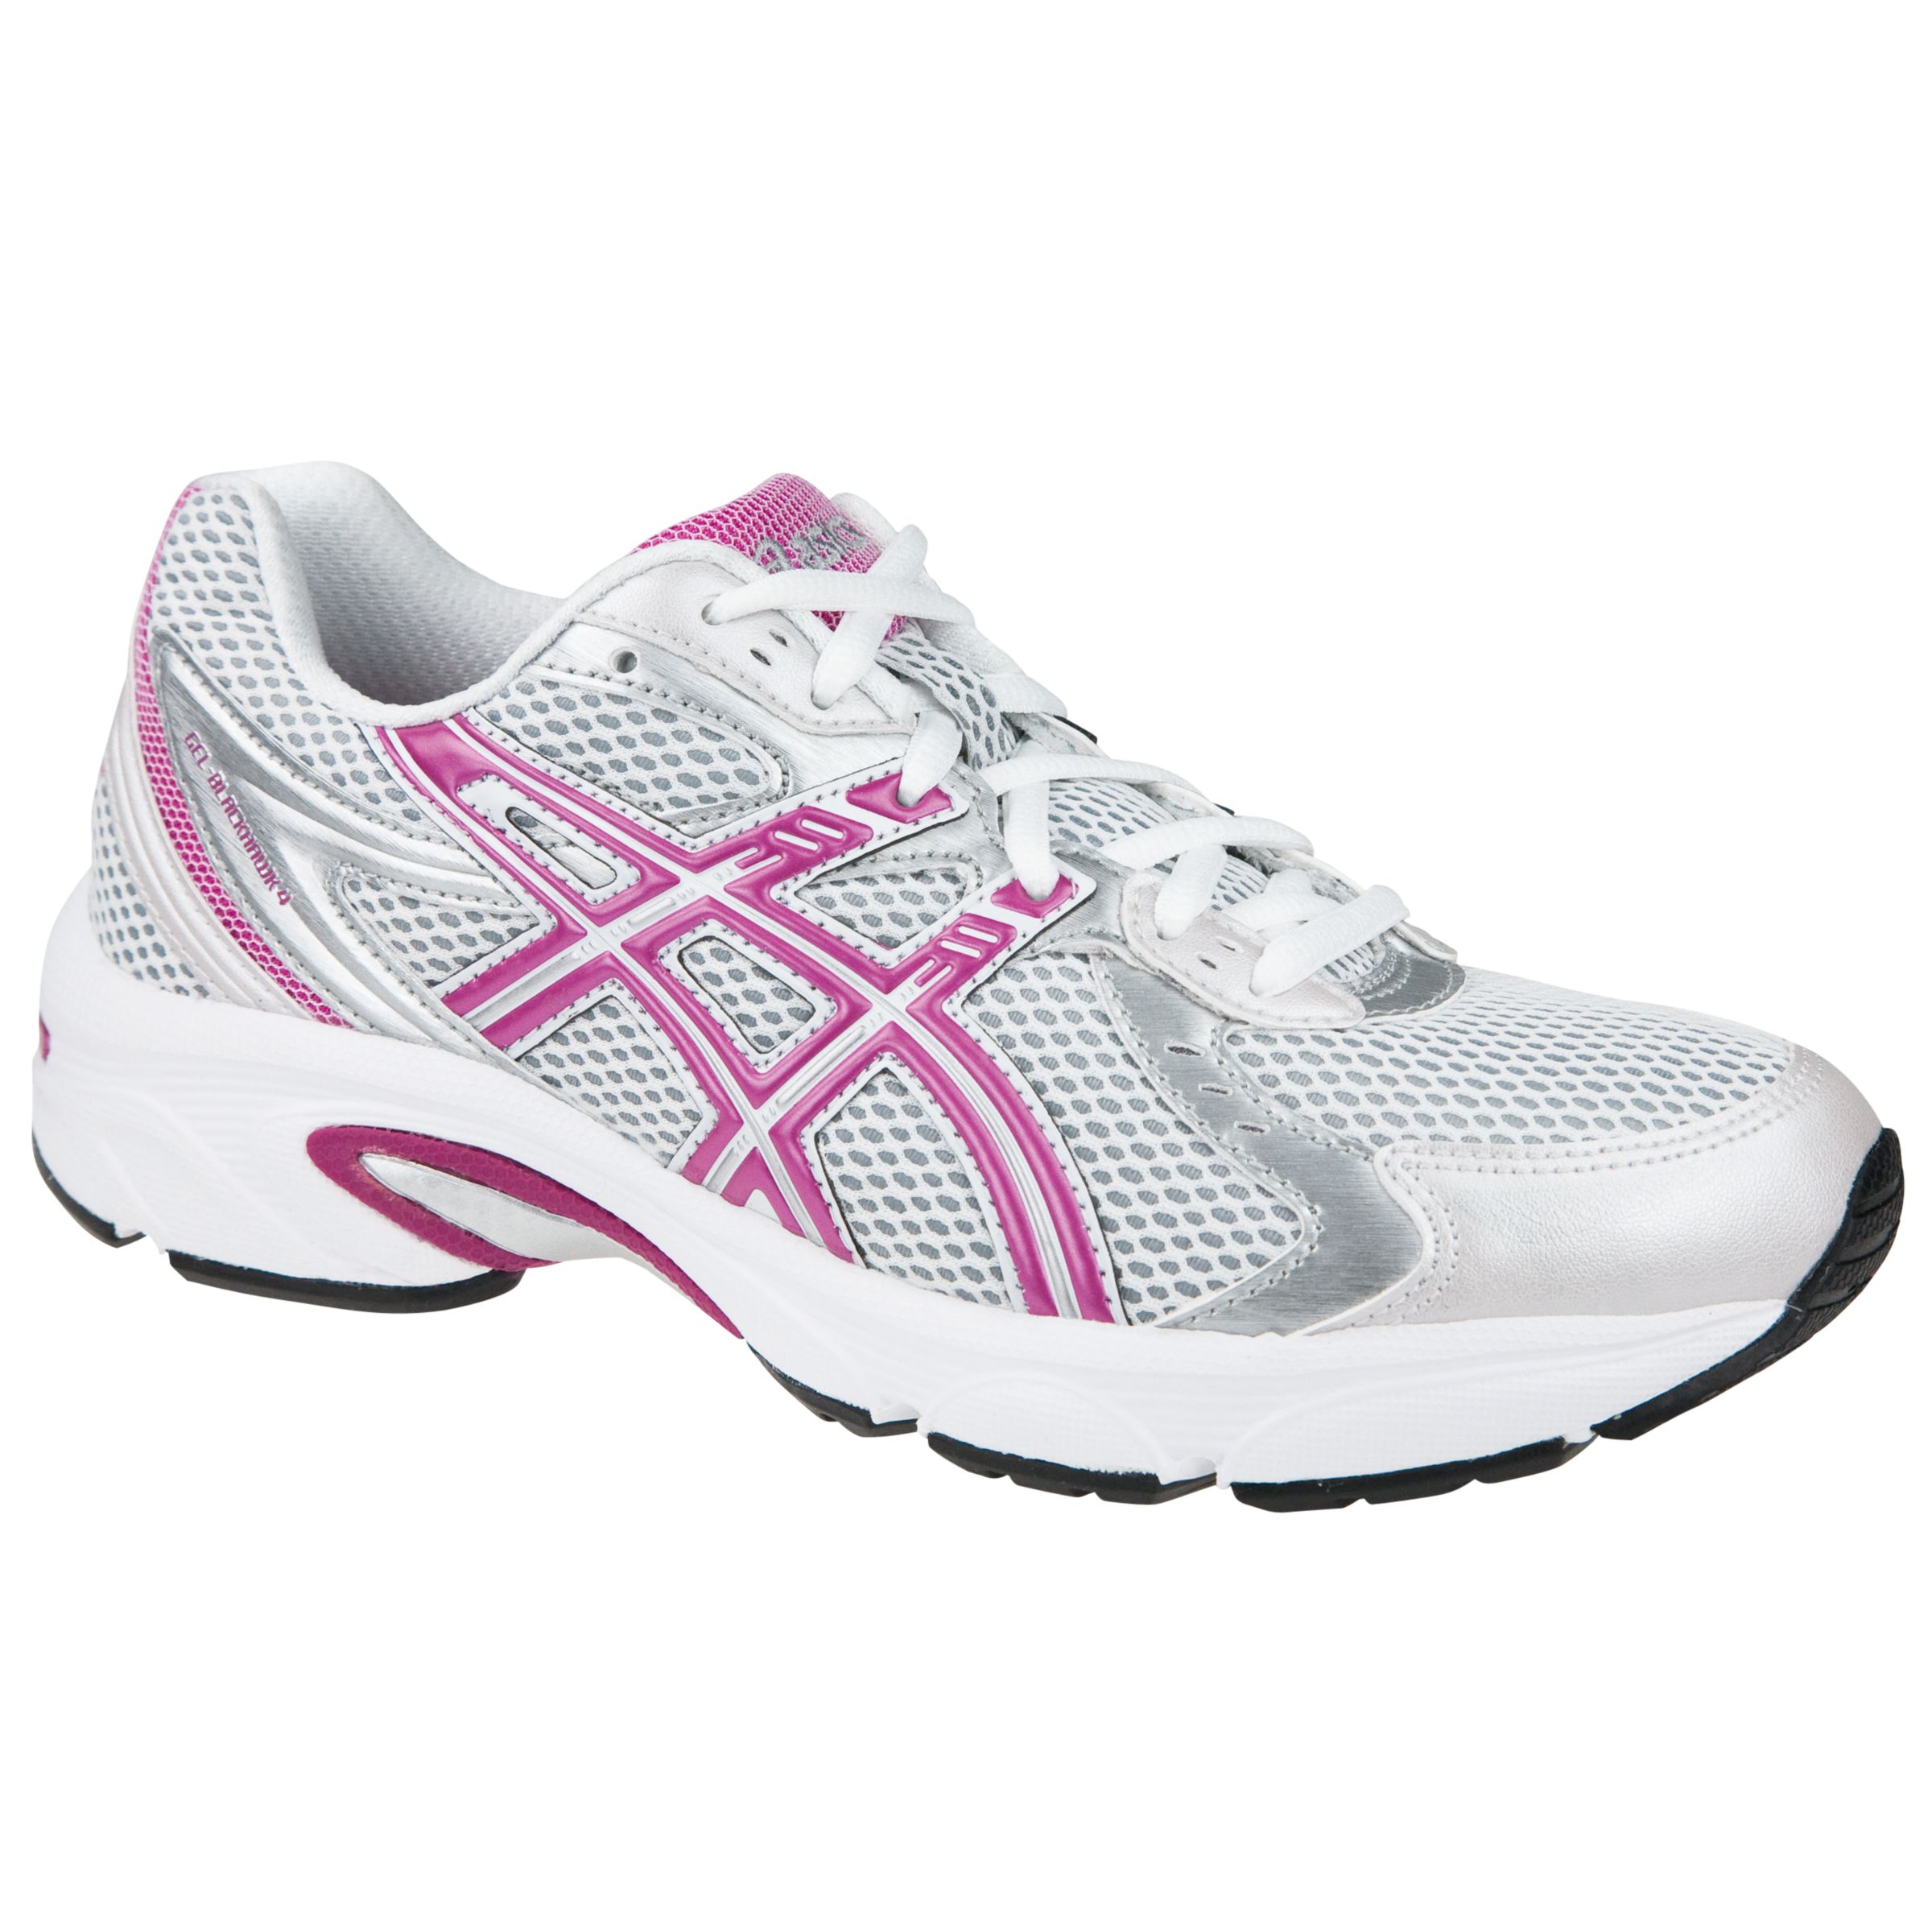 Asics Gel Blackhawk 4 Running Shoes, White/Pink